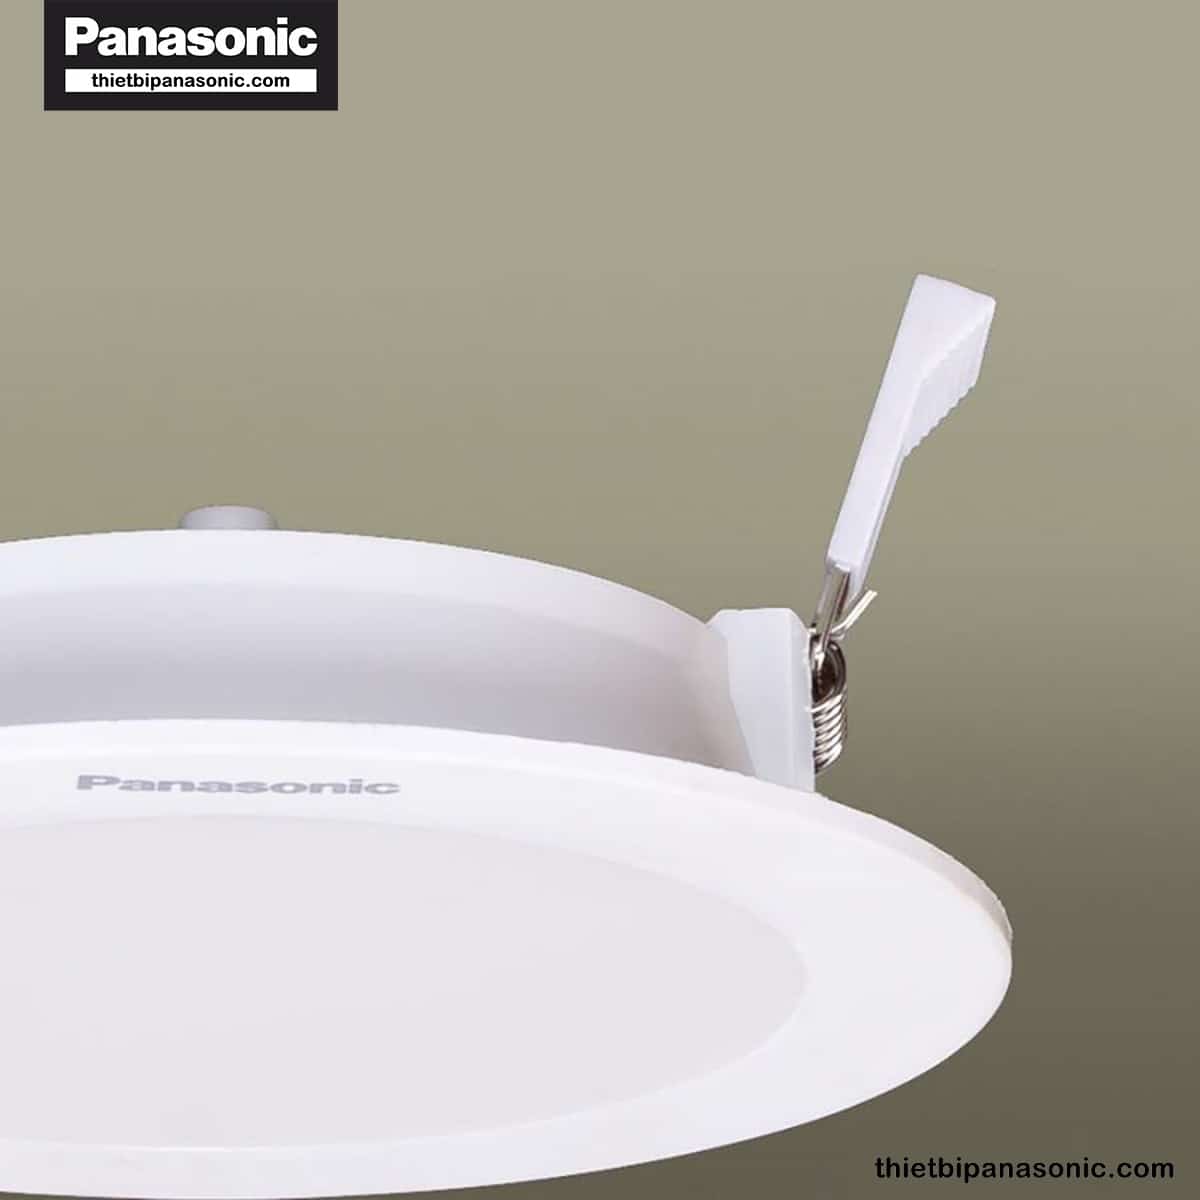 Đèn âm trần siêu mỏng Panasonic Neo Slim đổi 3 màu | 9W, 12W, 15W có phần đế siêu mỏng